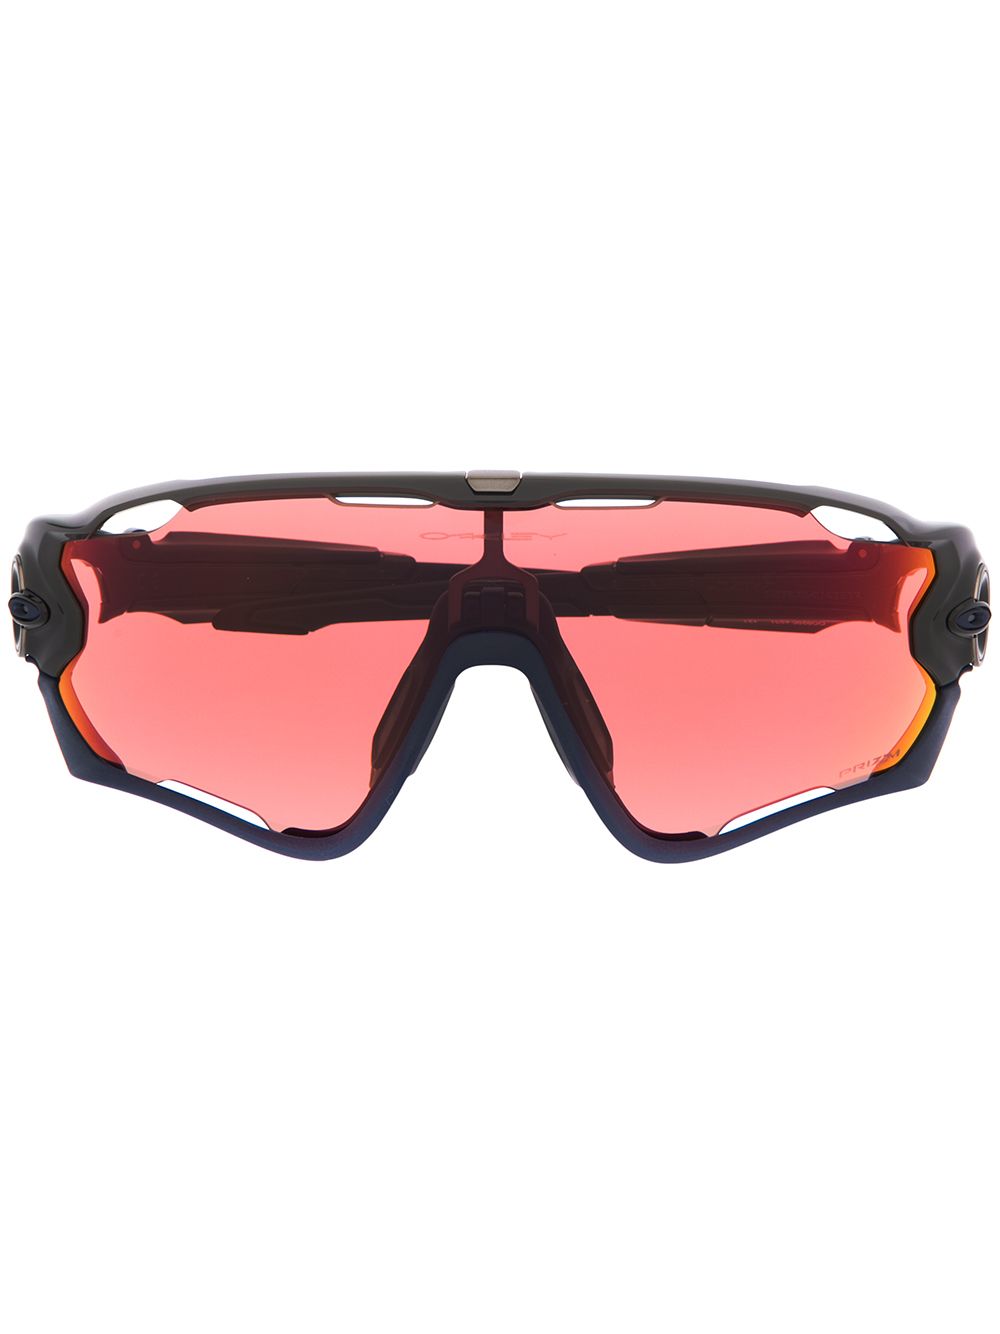 фото Oakley солнцезащитные очки jawbreaker в массивной оправе